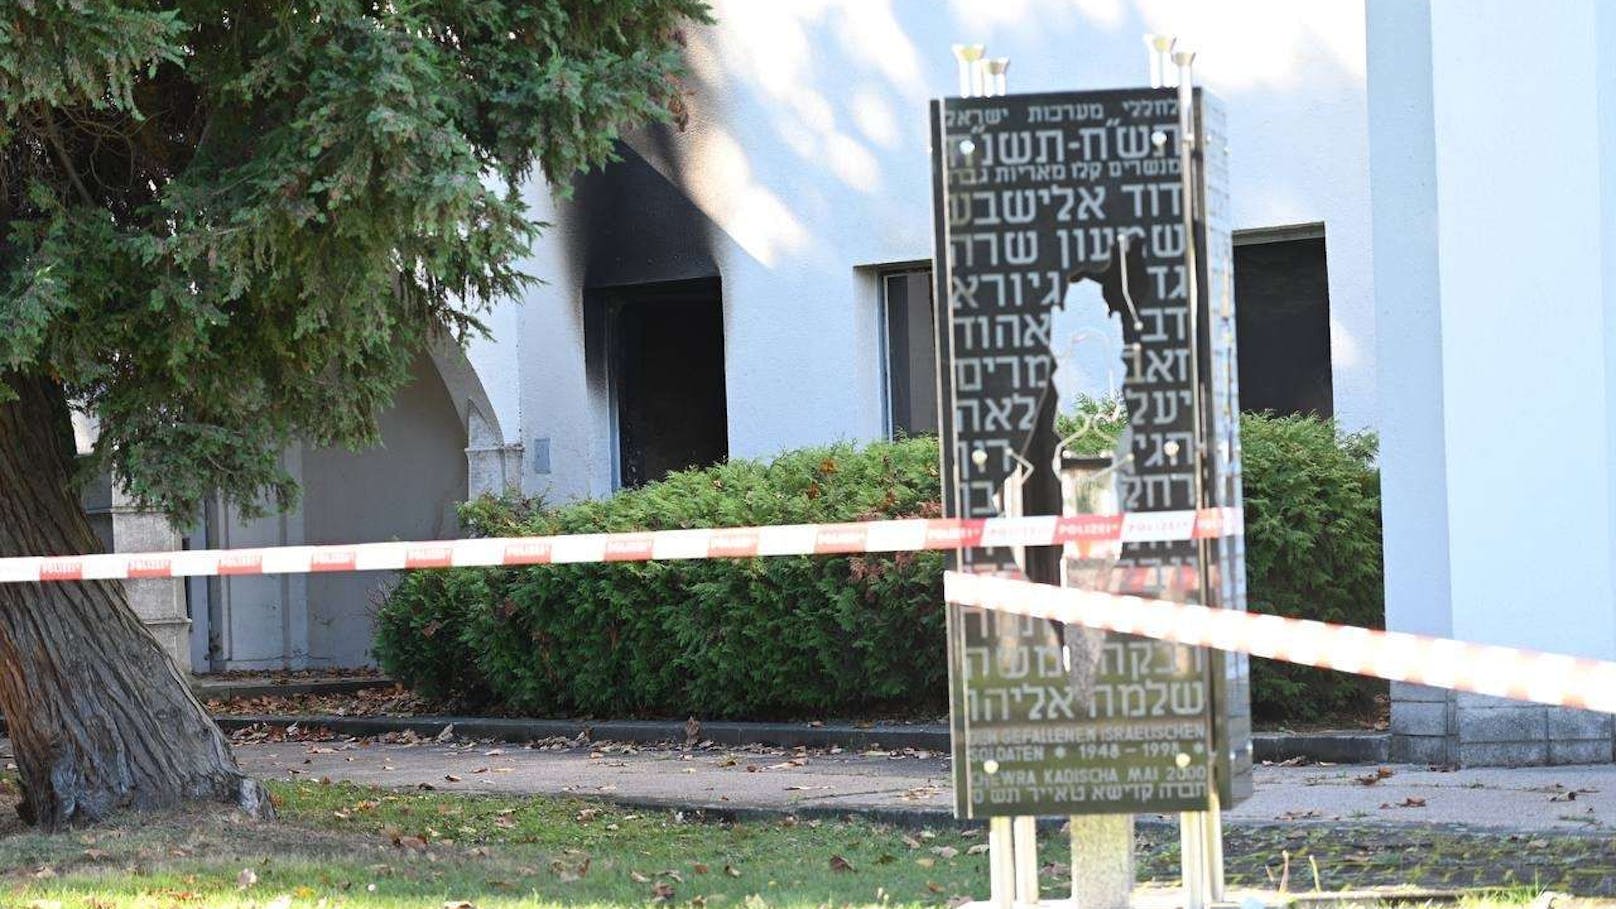 Am Wiener Zentralfriedhof kam es zu einer antisemitischen Brandattacke.